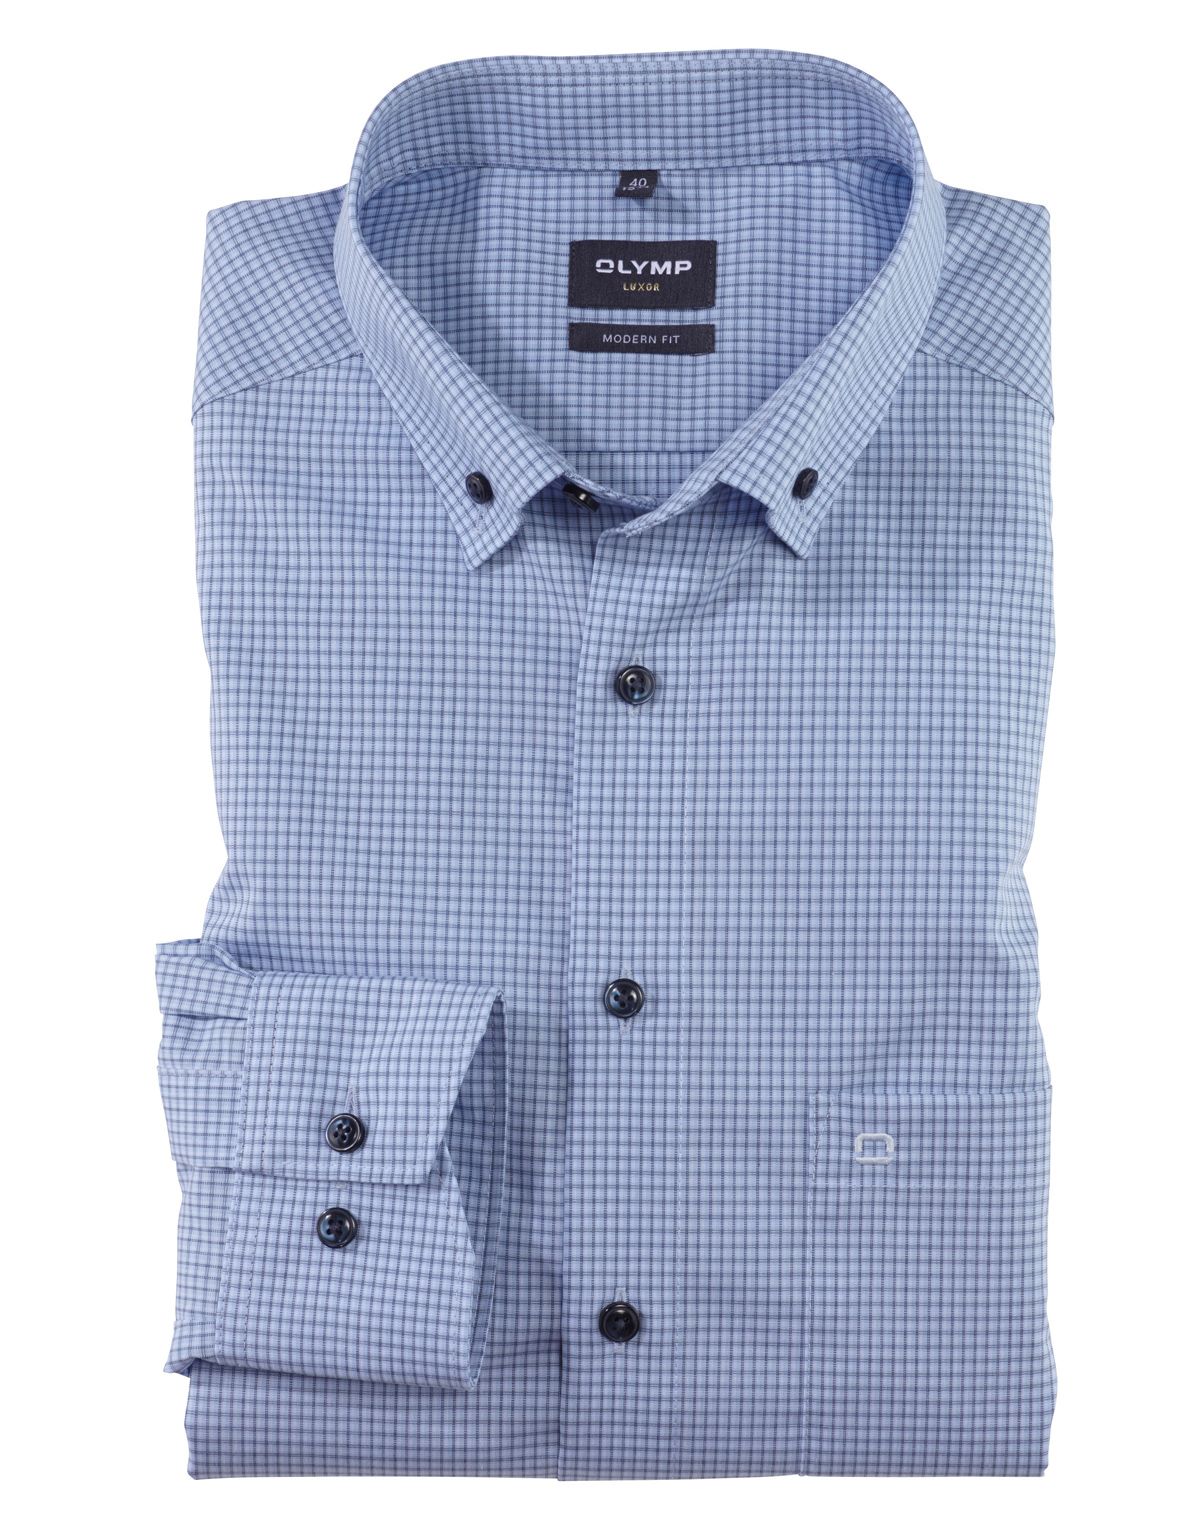 Рубашка мужская в клетку OLYMP Luxor, modern fit, пуговицы на воротнике[ГОЛУБОЙ]